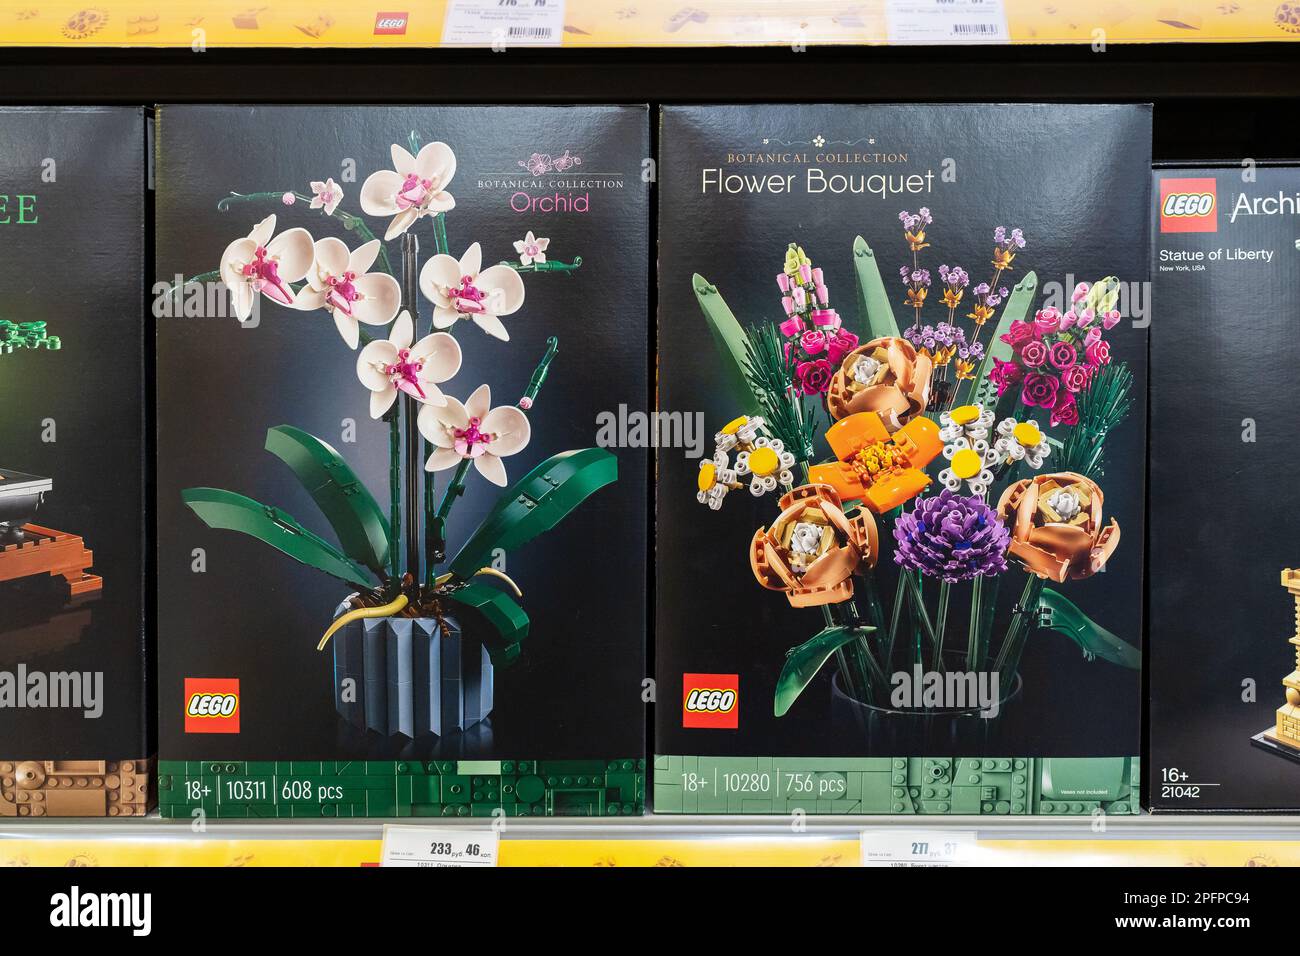 La collezione botanica LEGO in vendita presso il Lego Store